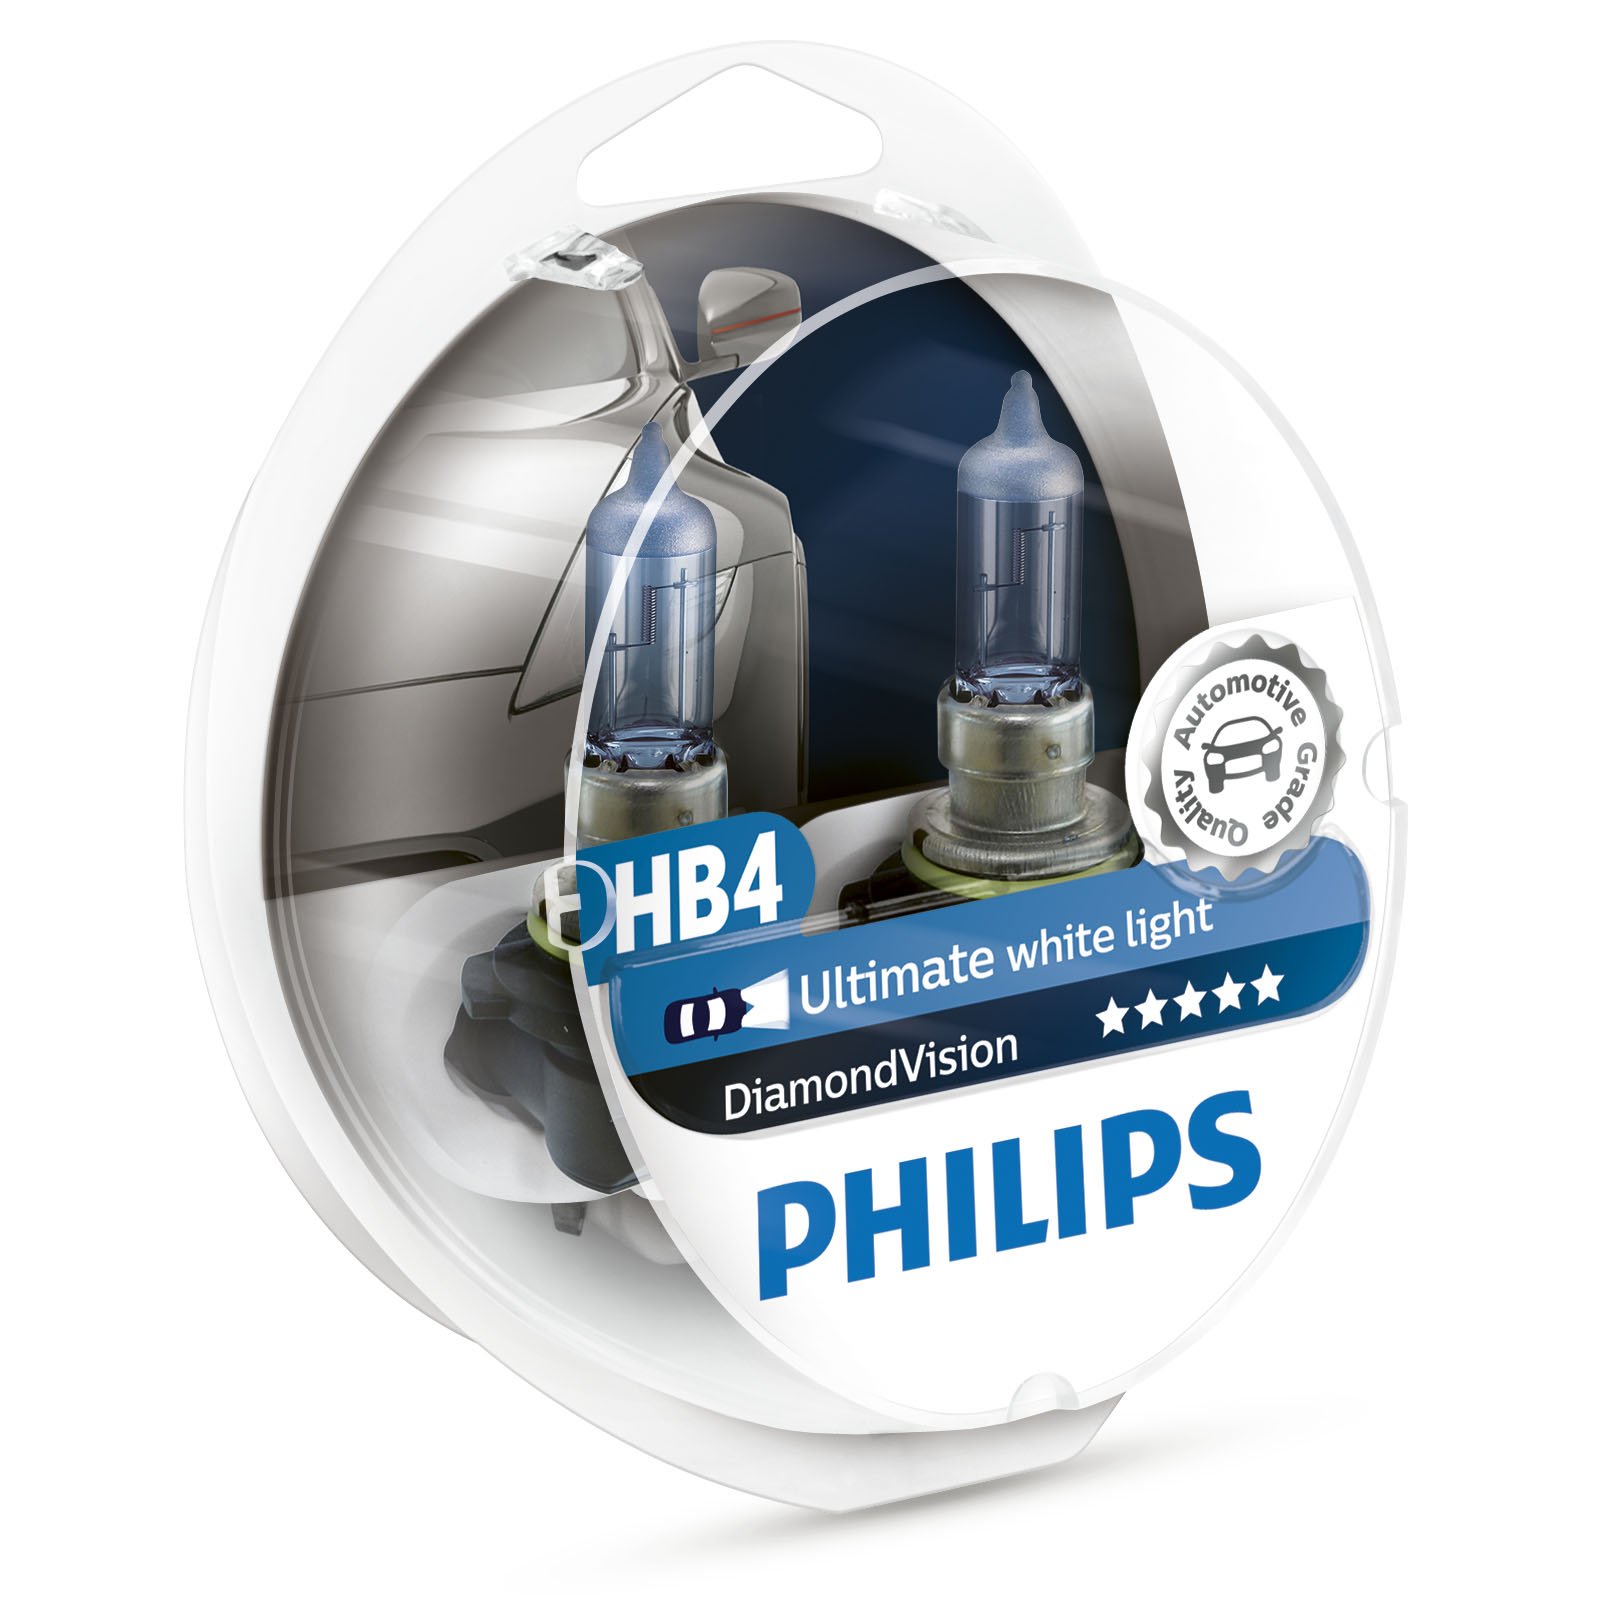 PHILIPS DIAMOND VISION HB4 9006 UPGRADE SCHEINWERFER BIRNEN von Philips